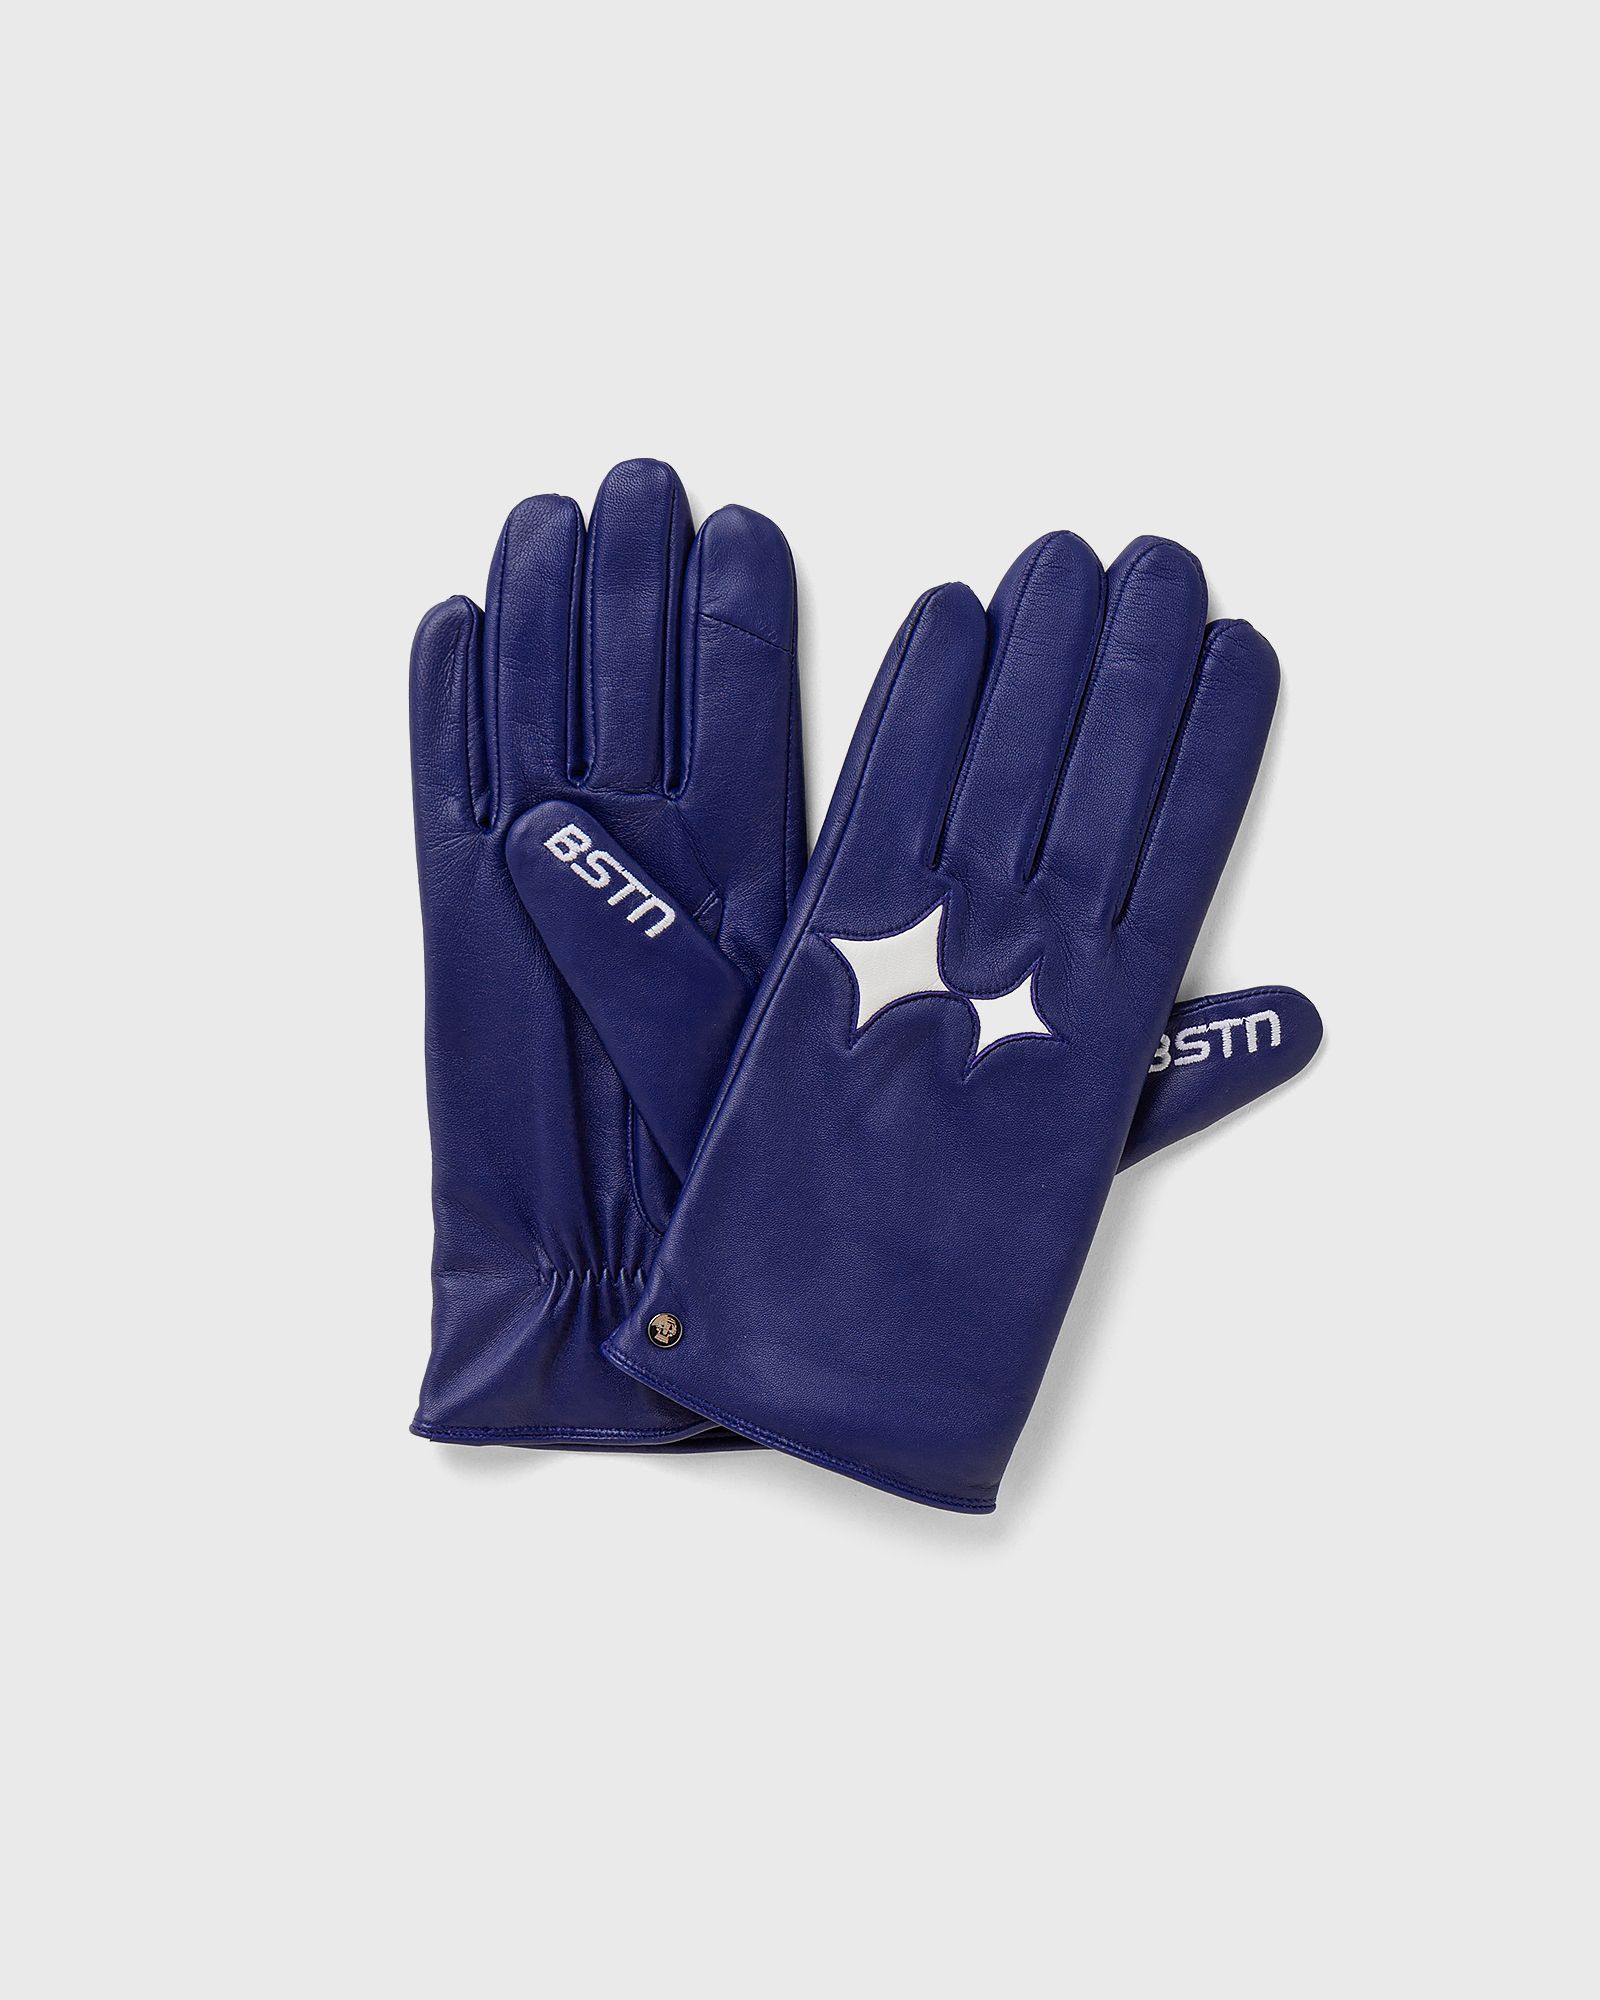 BSTN Brand - roeckl x  touch gloves wmns men gloves blue in größe:7,5